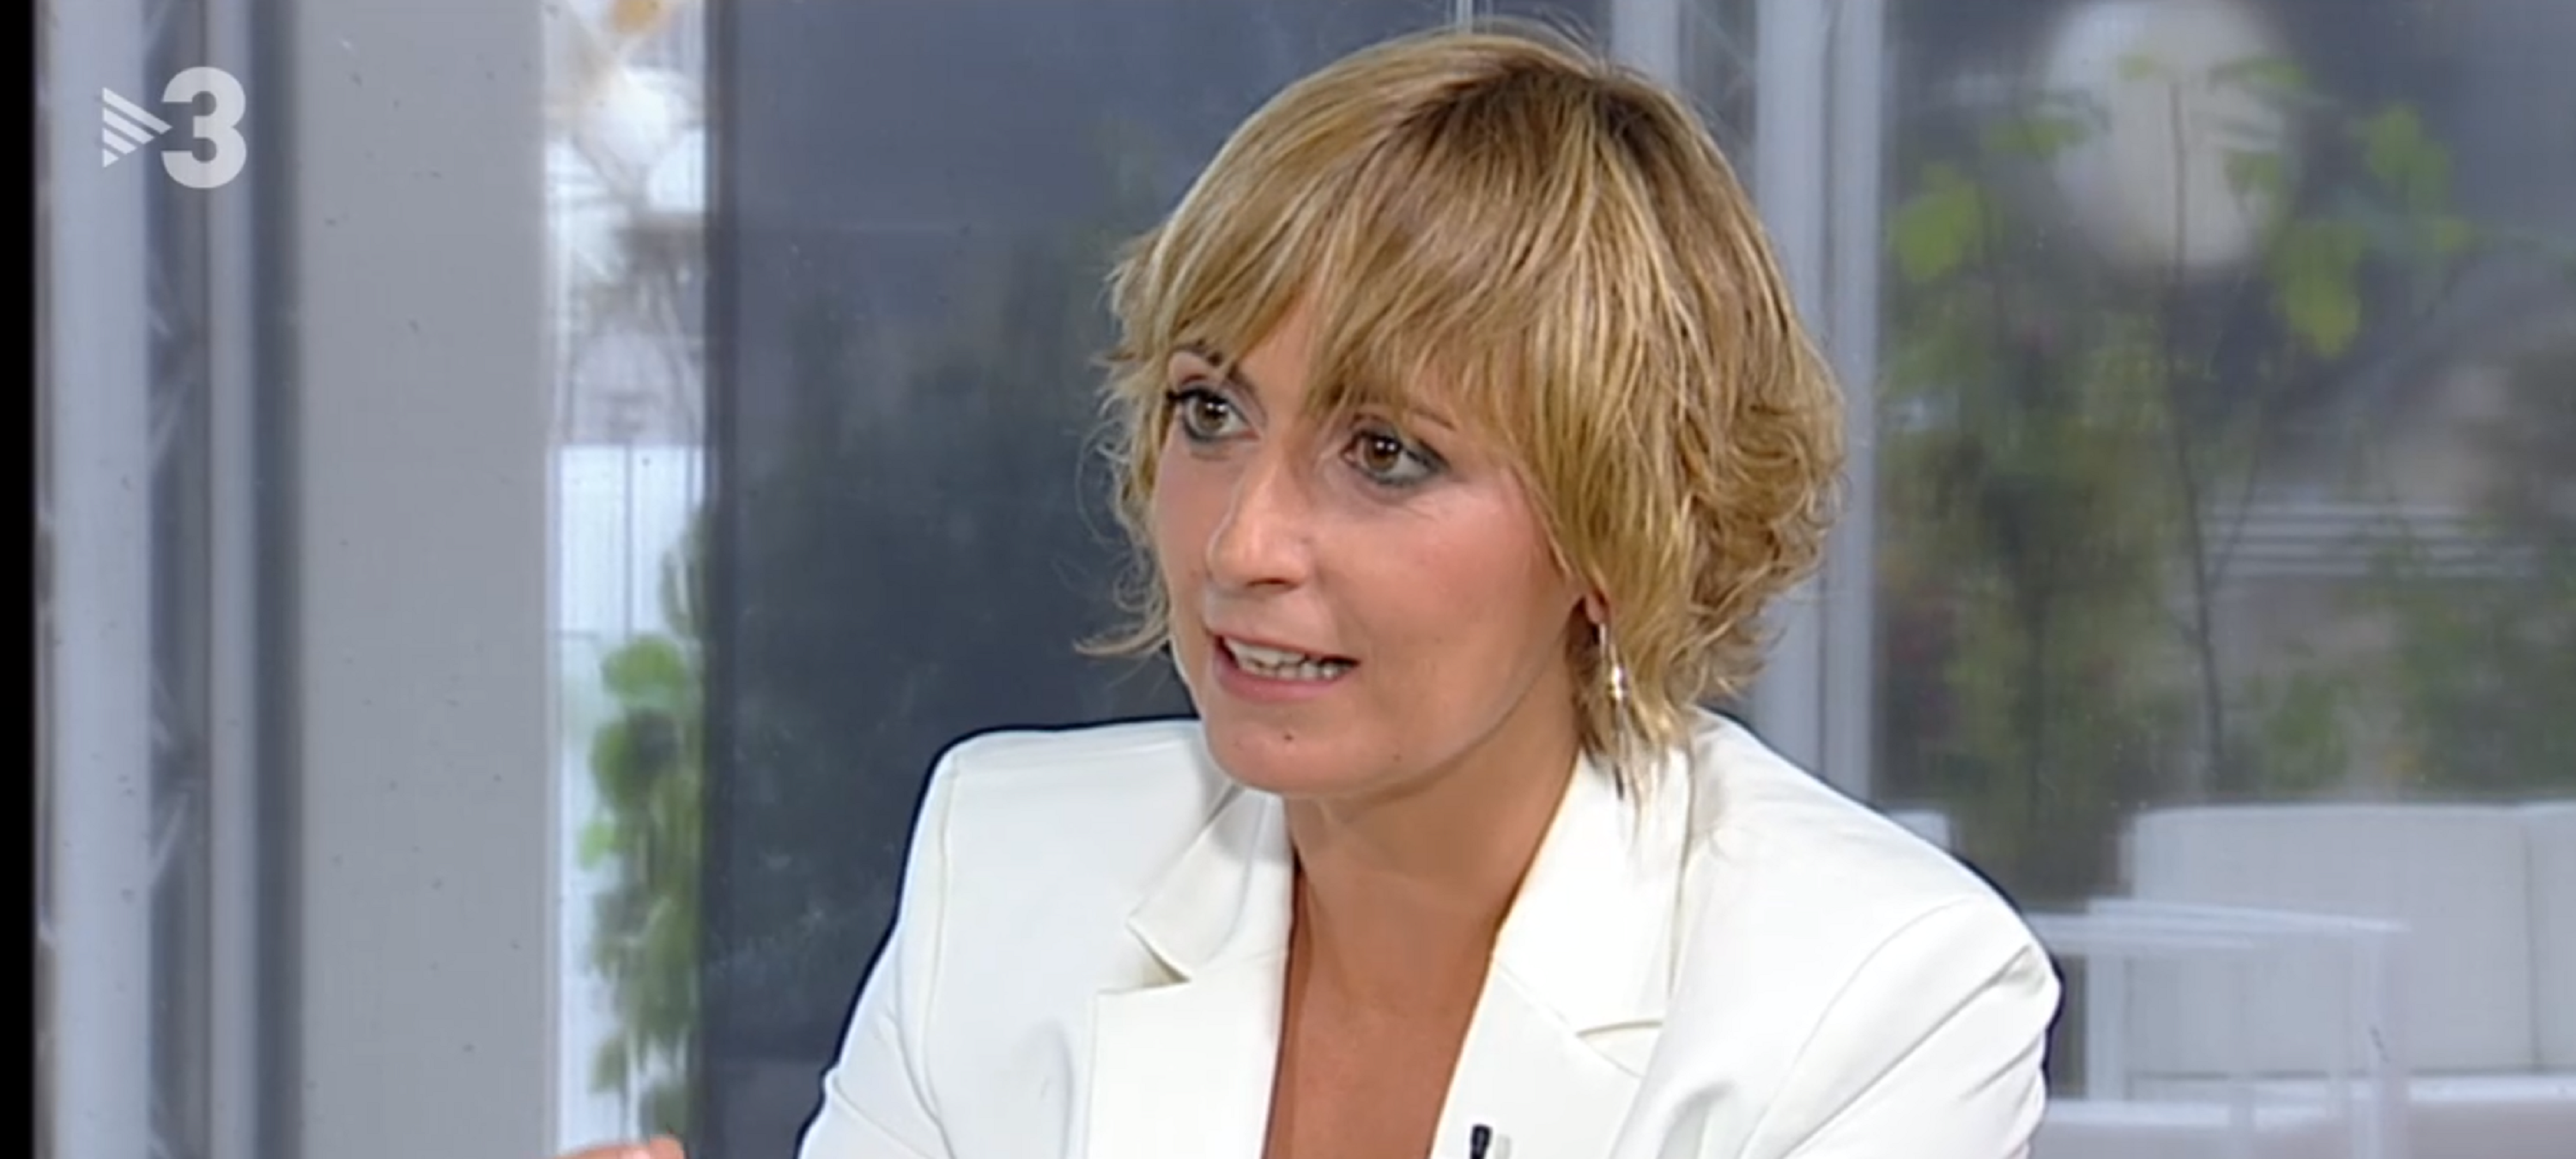 Montse Tió, possible cara per al nou programa de migdies a TV3